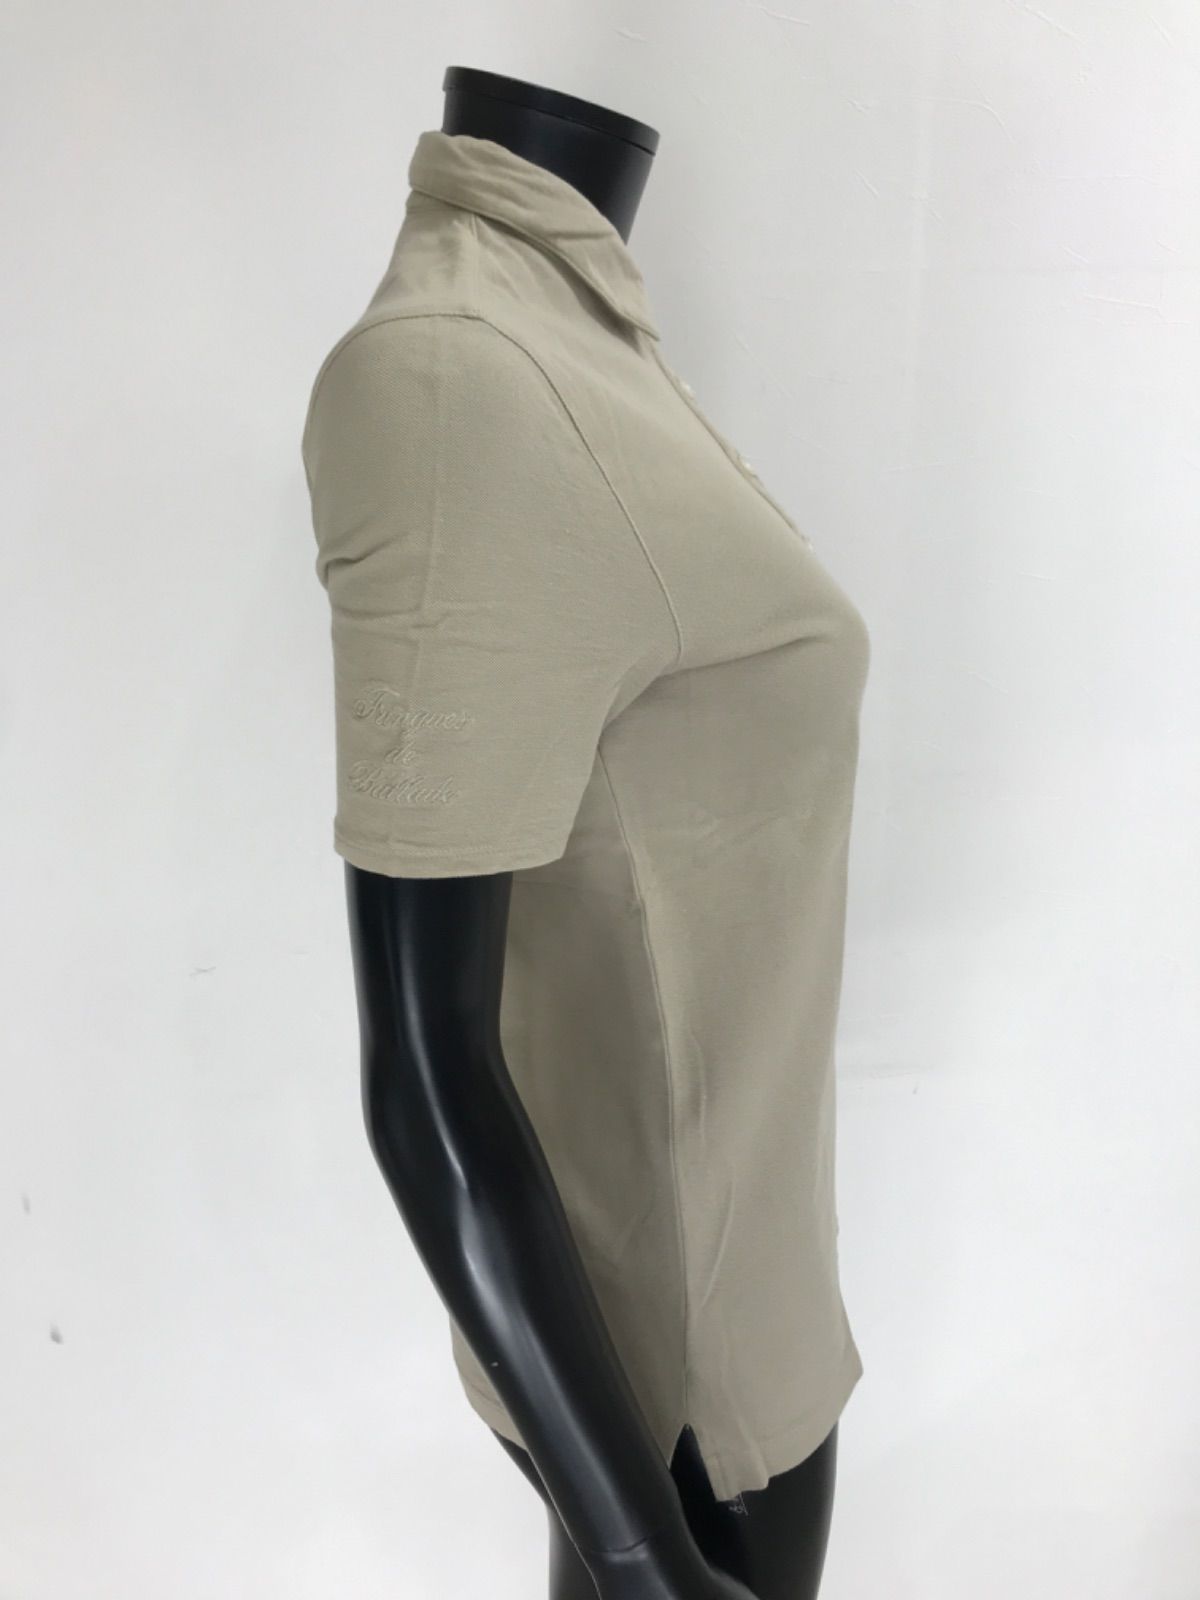 【USED】ZOY ゾーイ 綿 半袖 ポロシャツ ワッペン ベージュ系 レディース 38 M ゴルフウェア